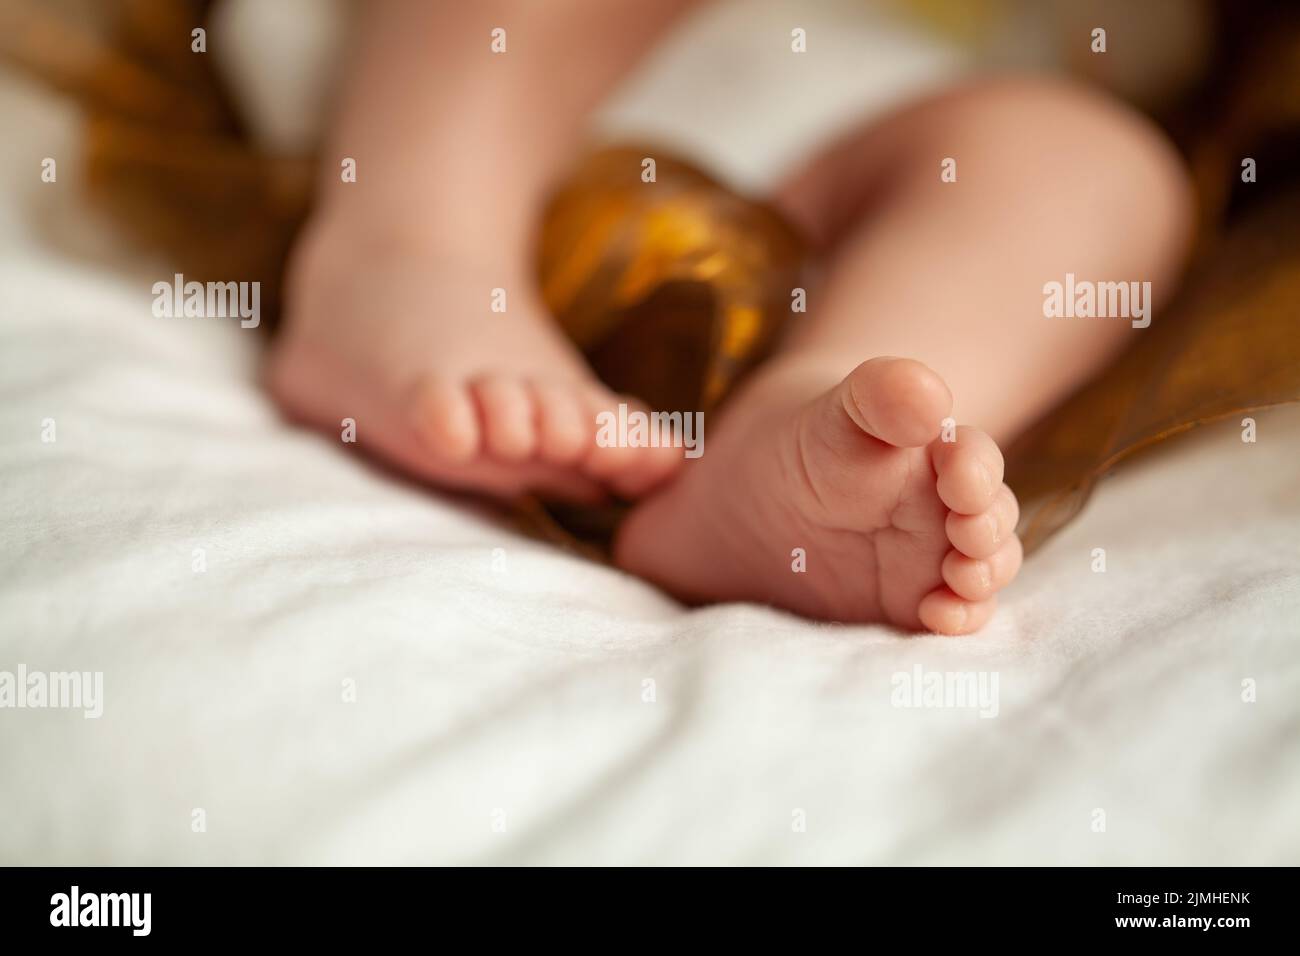 Pies diminutos de niña recién nacida Foto de stock